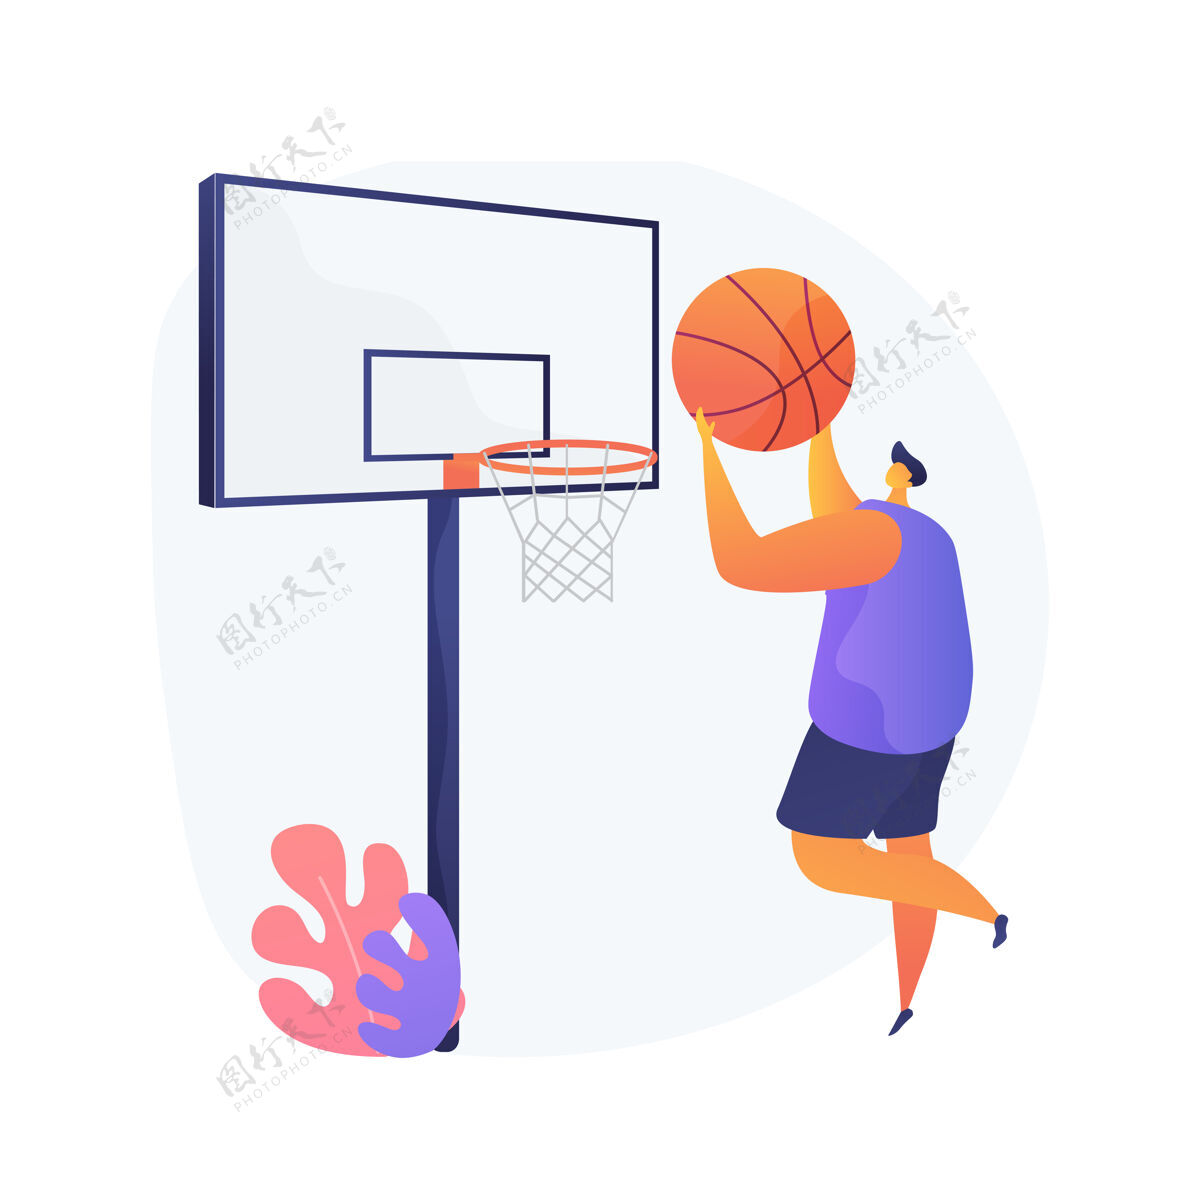 专业篮球抽象概念矢量插图冠军联赛 游戏玩家 篮网 锦标赛冠军 职业大学运动队 打球 美国竞技场抽象隐喻篮球运动运动员